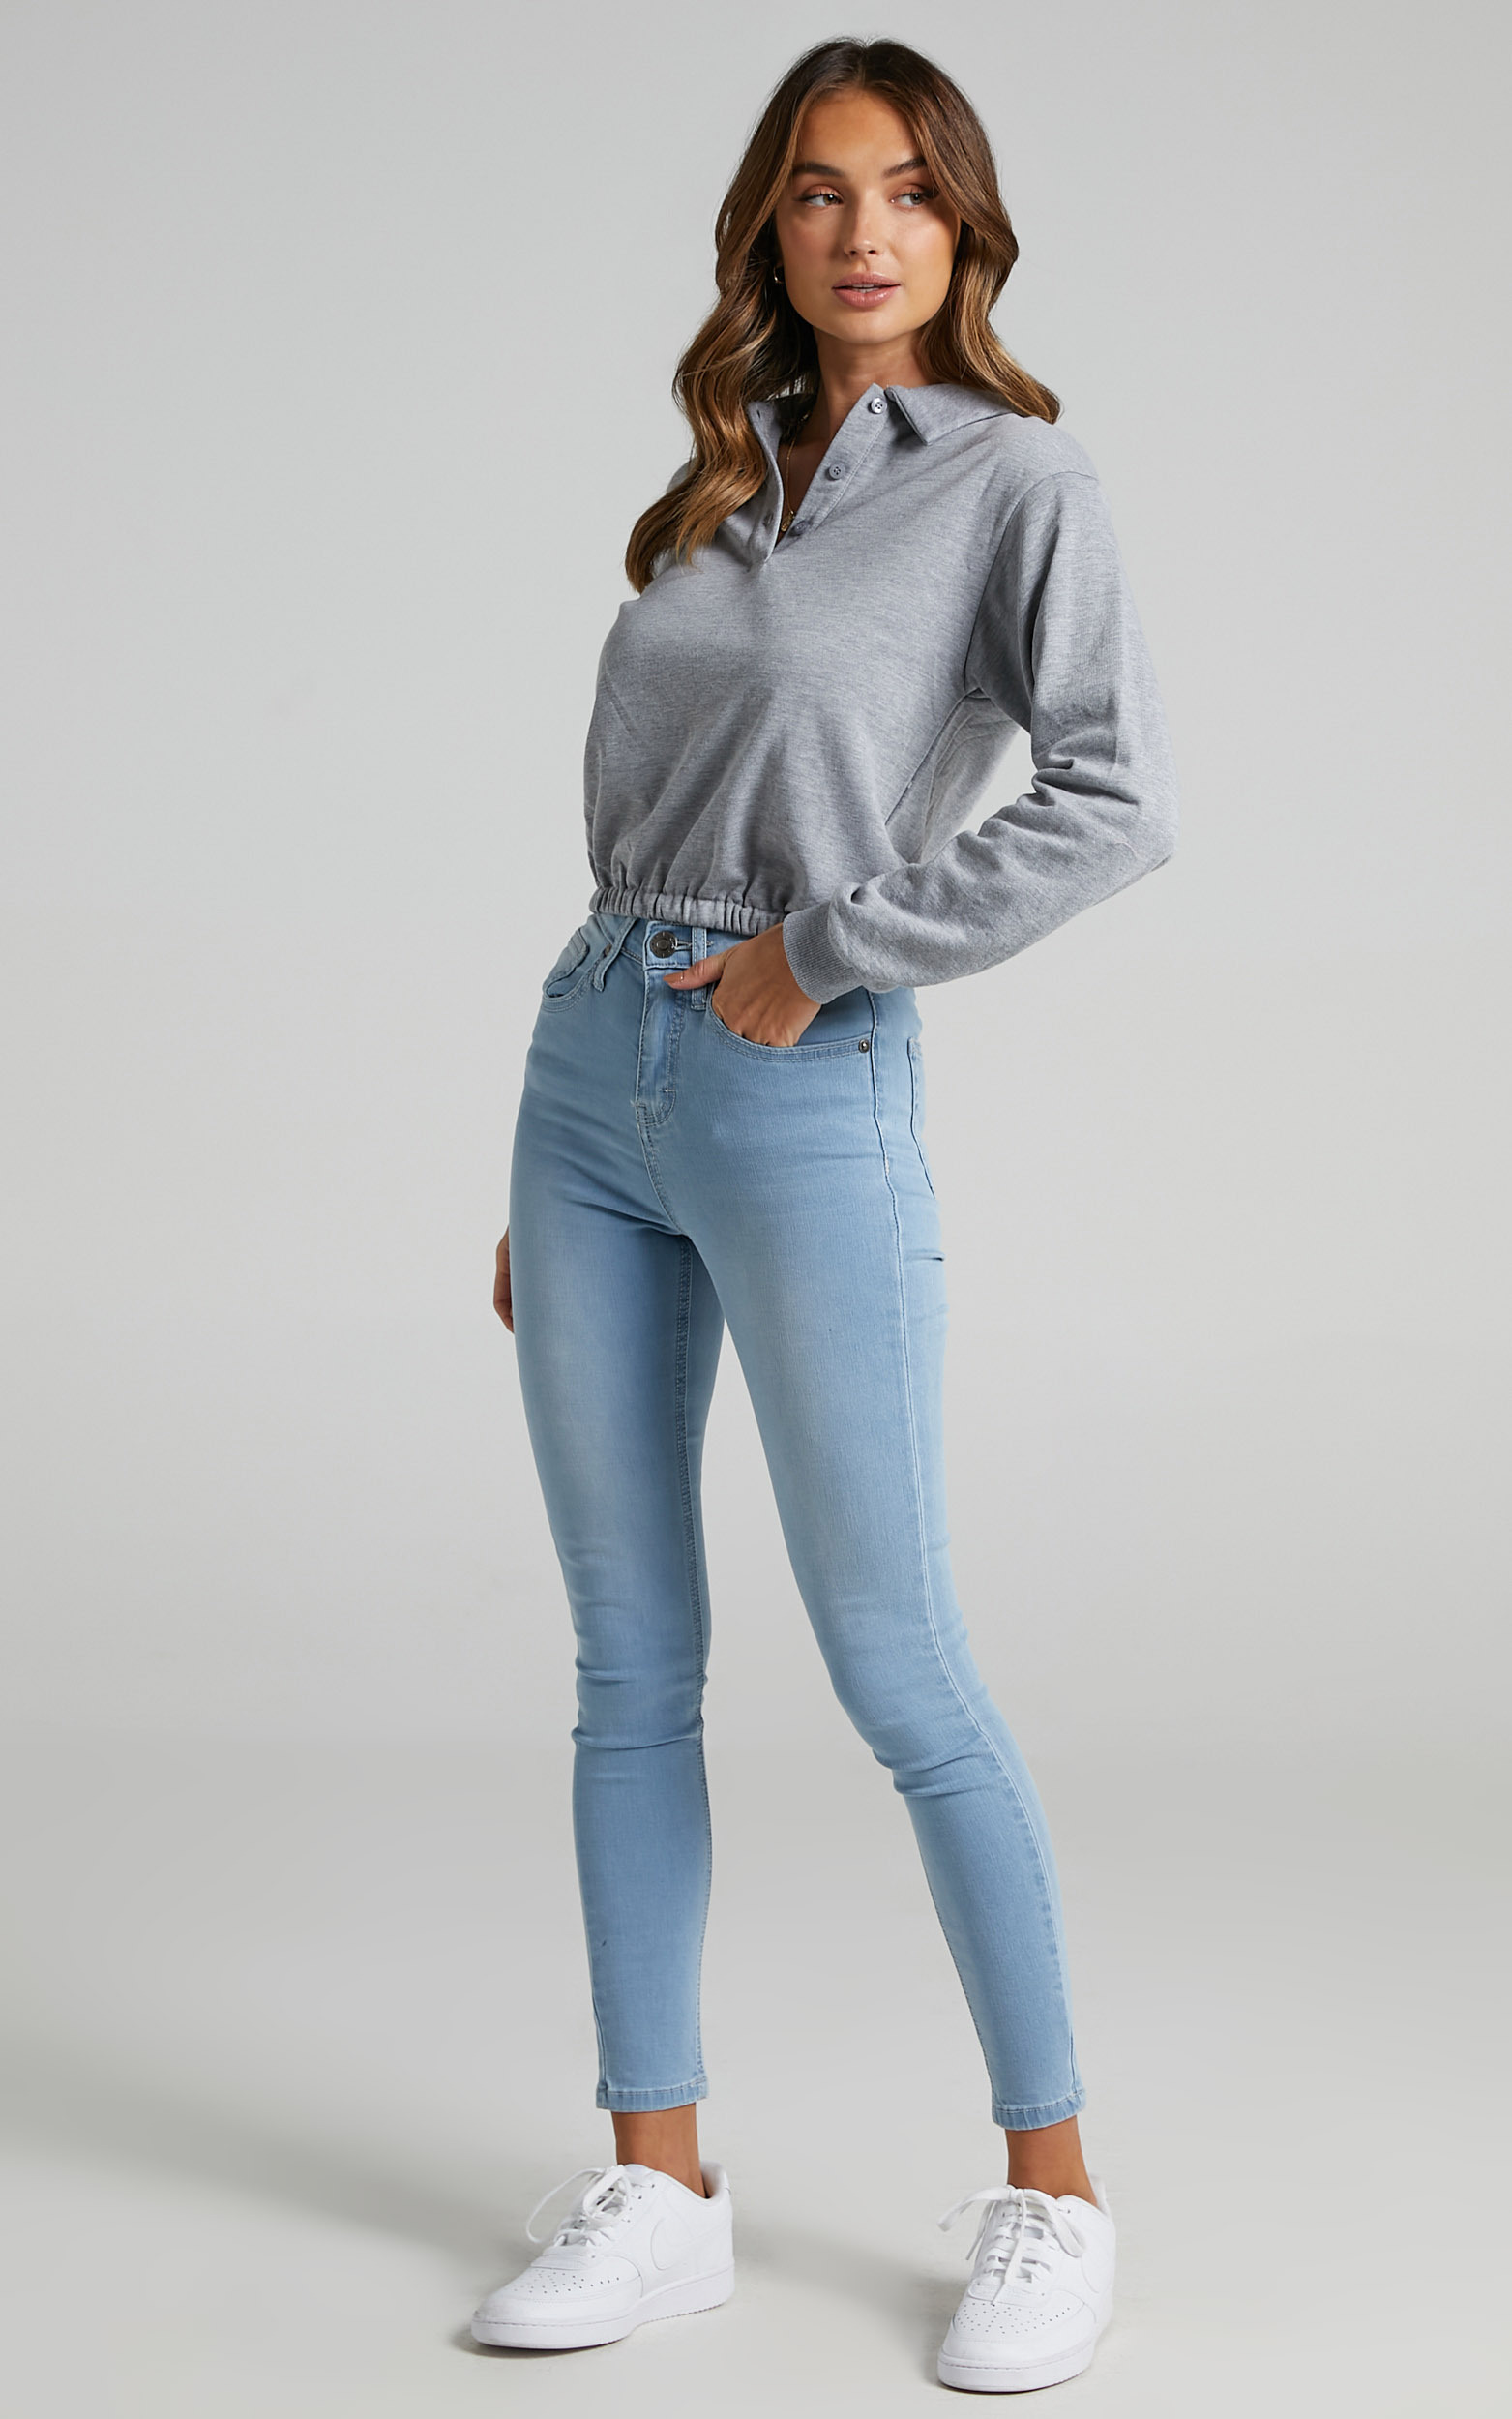 Christina Skinny Jeans In Light Wash Denim | Showpo